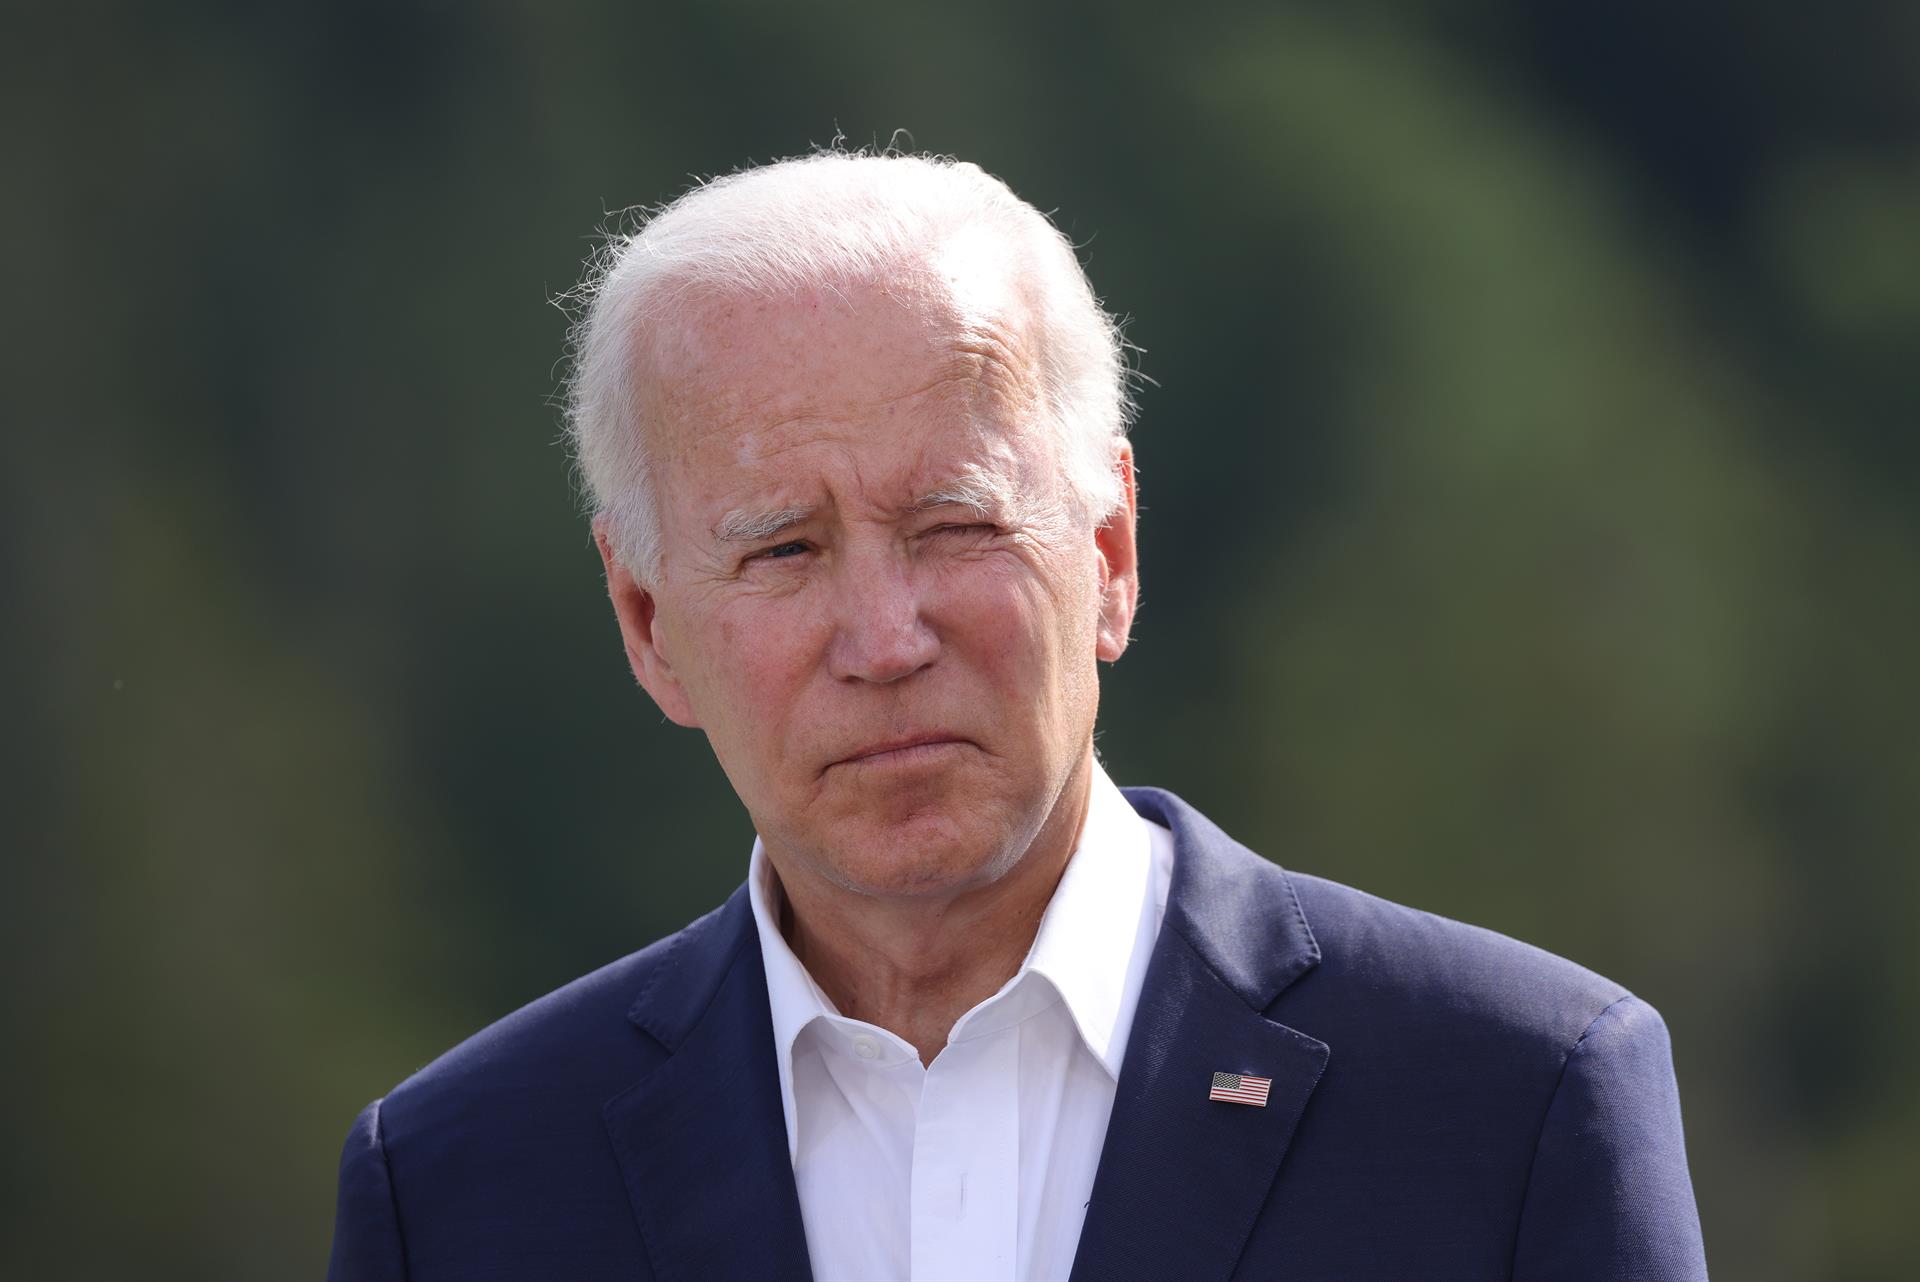 “Nano, nono, no sé”: Biden se confunde y colapsa, una vez más, durante discurso (VIDEO)